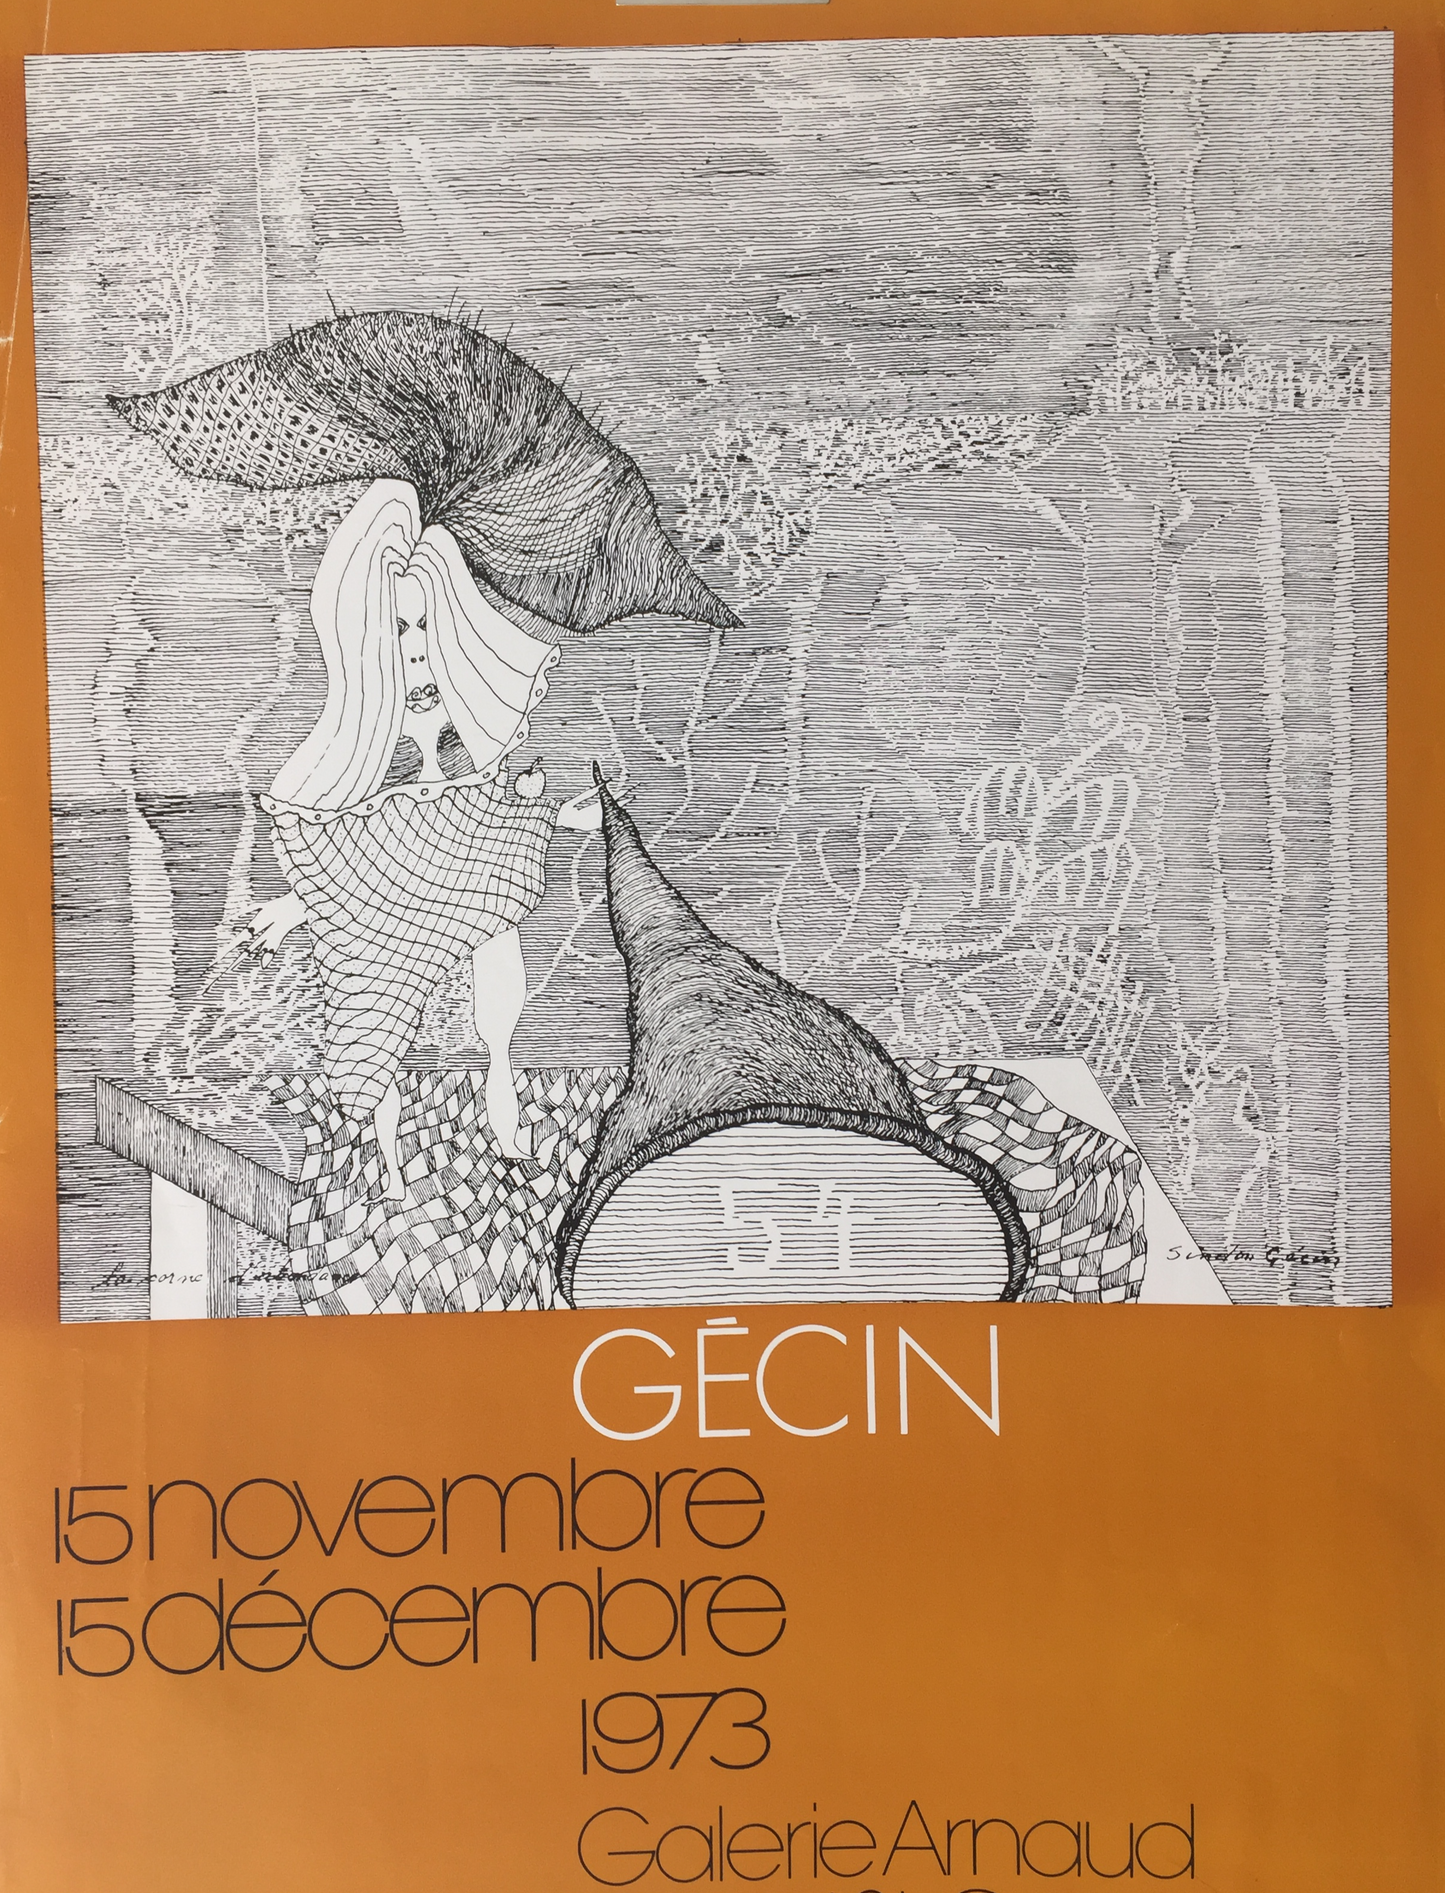 Sindon Gecin, Galerie Arnaud